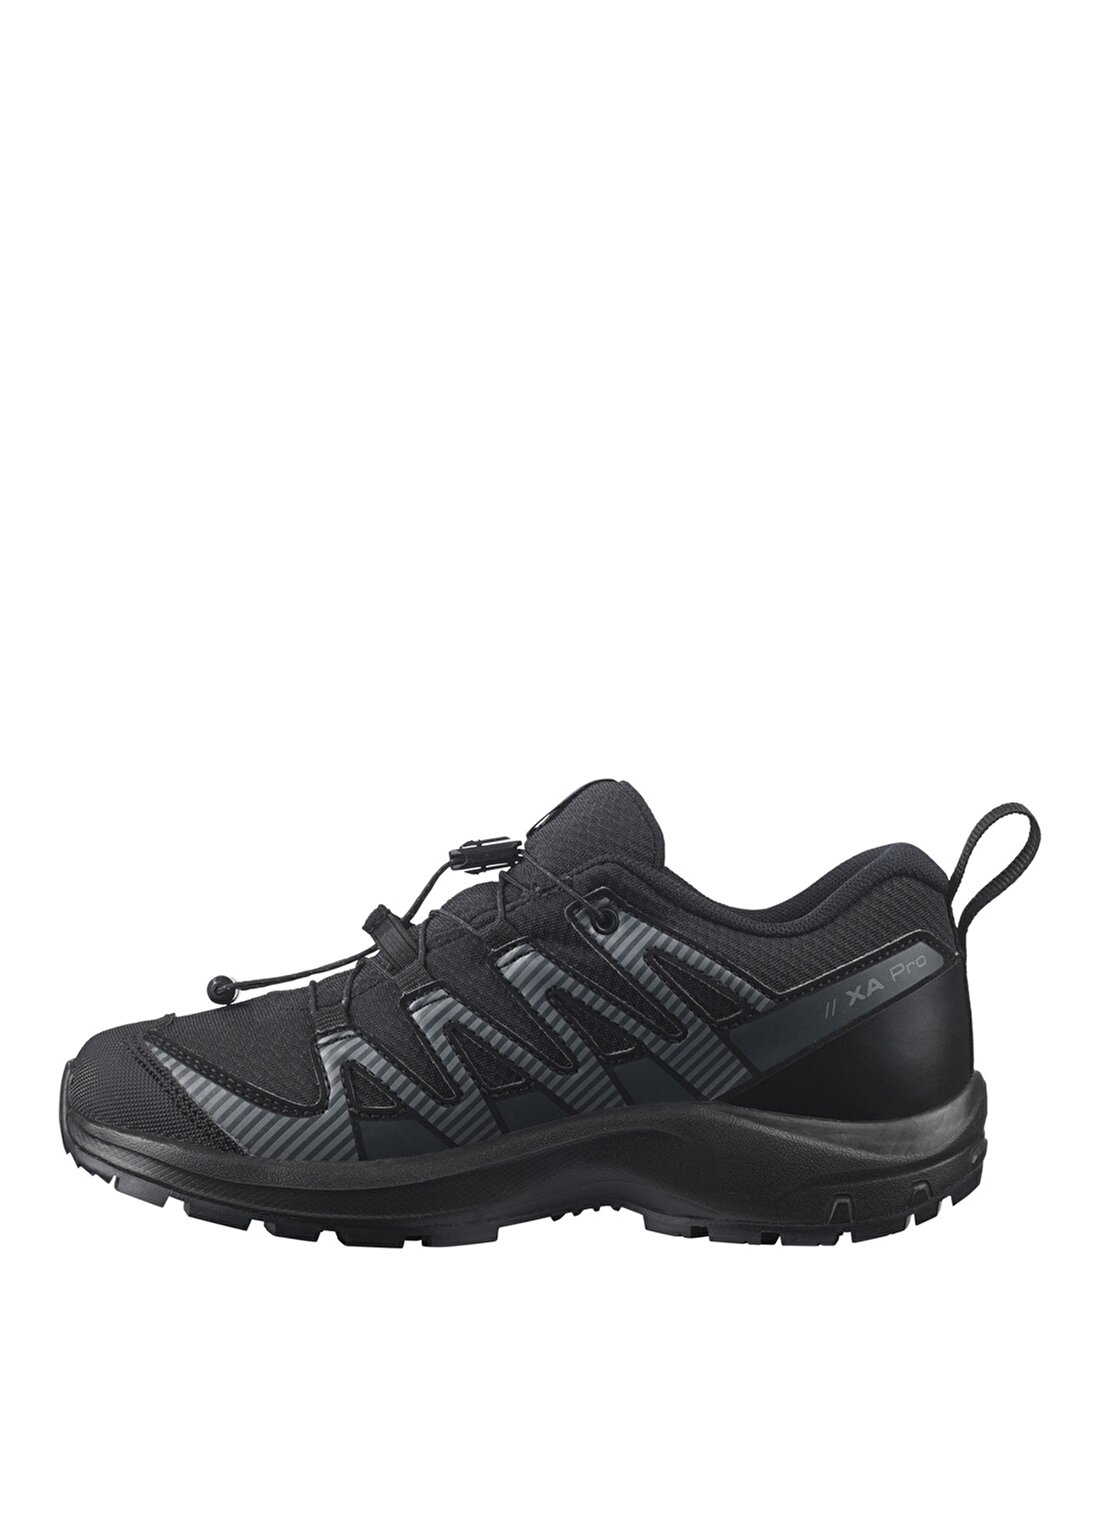 Salomon Siyah Erkek Çocuk Outdoor Ayakkabısı L41433900 XA PRO V8 CSWP J